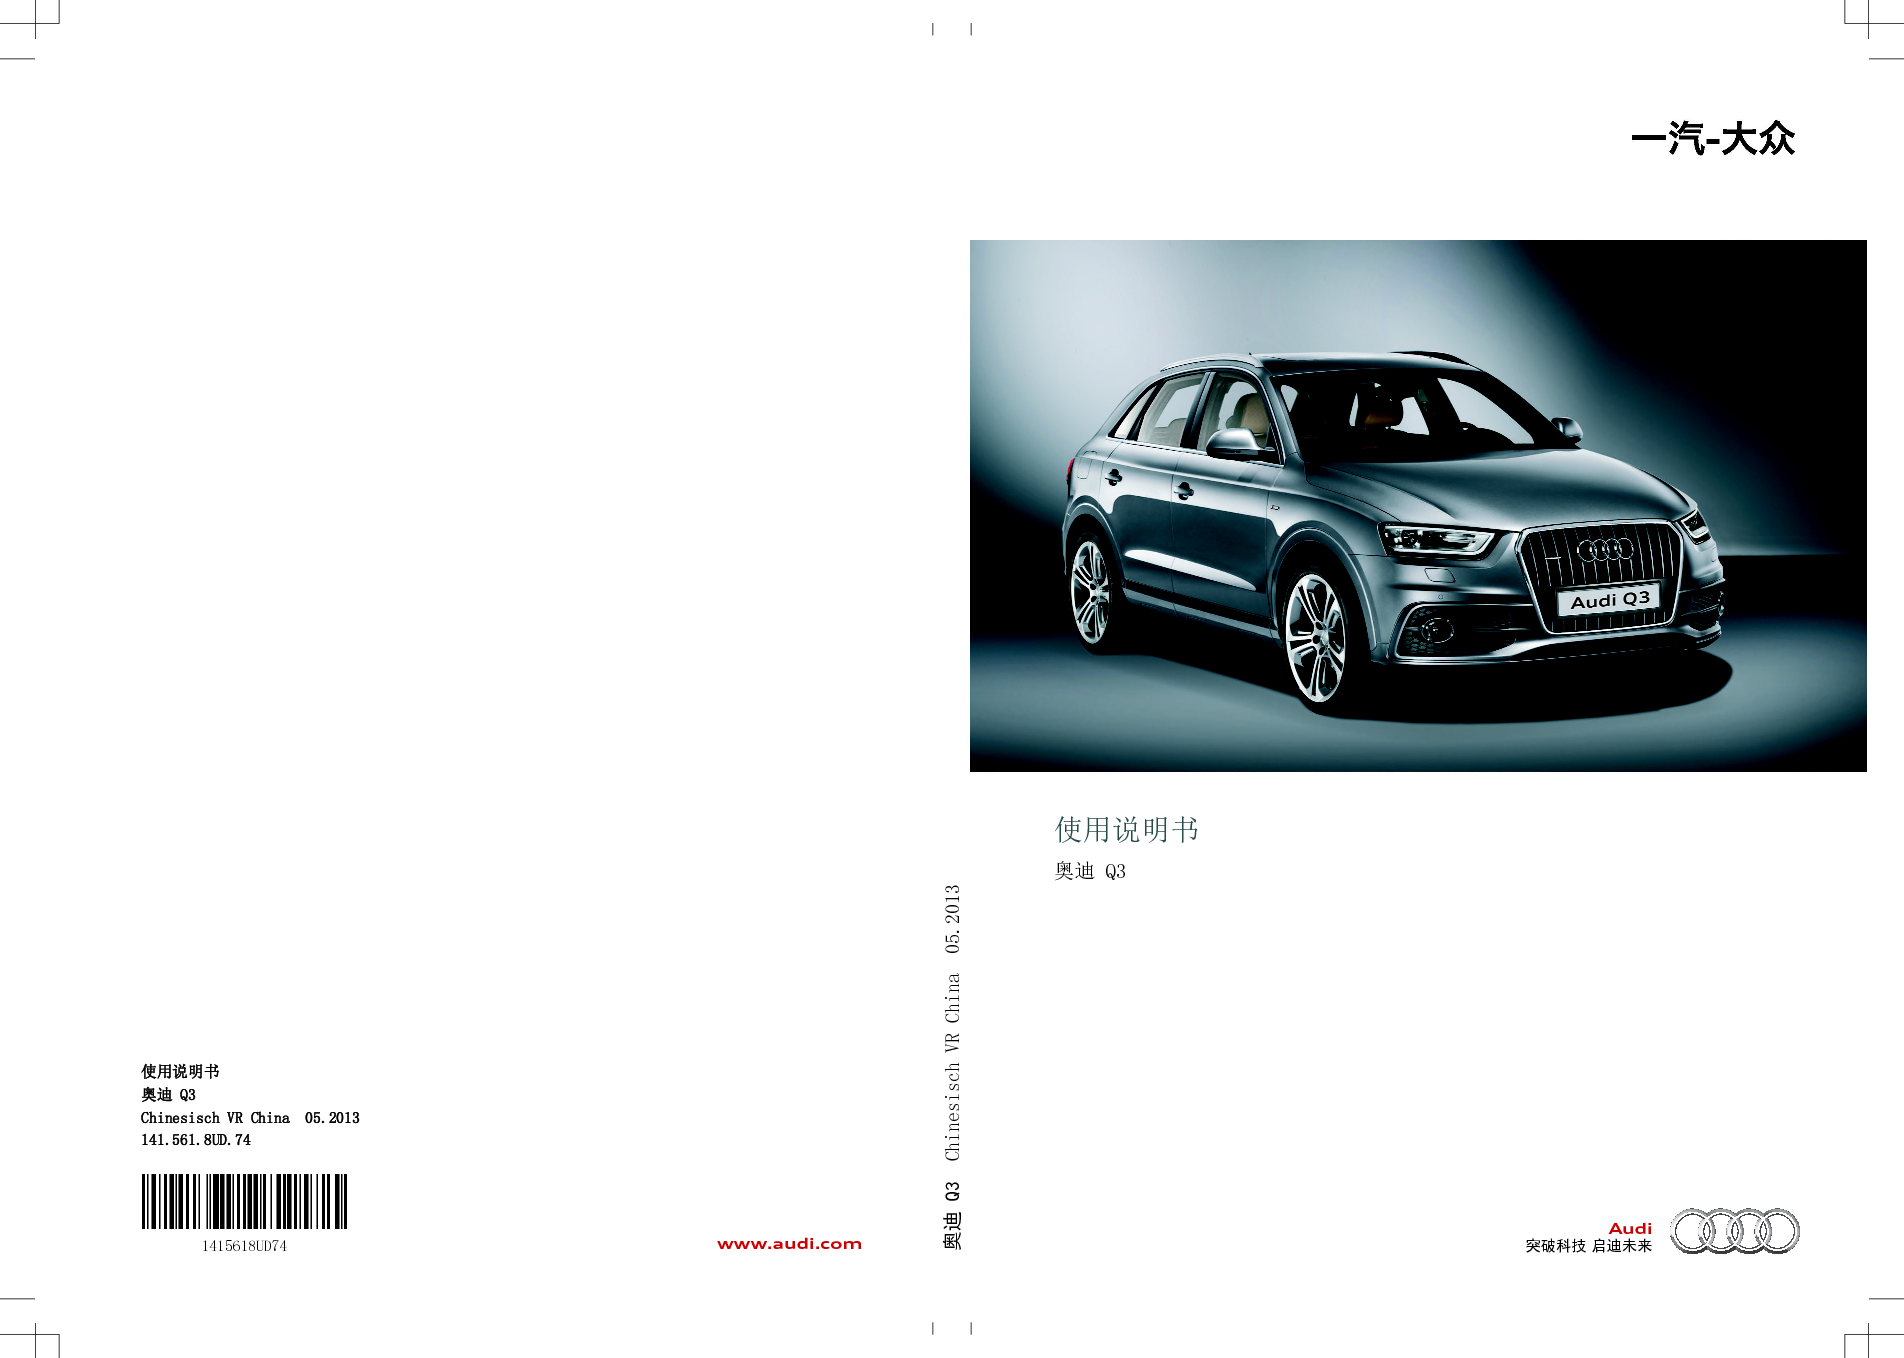 奥迪 Audi A8 2014 用户手册 封面